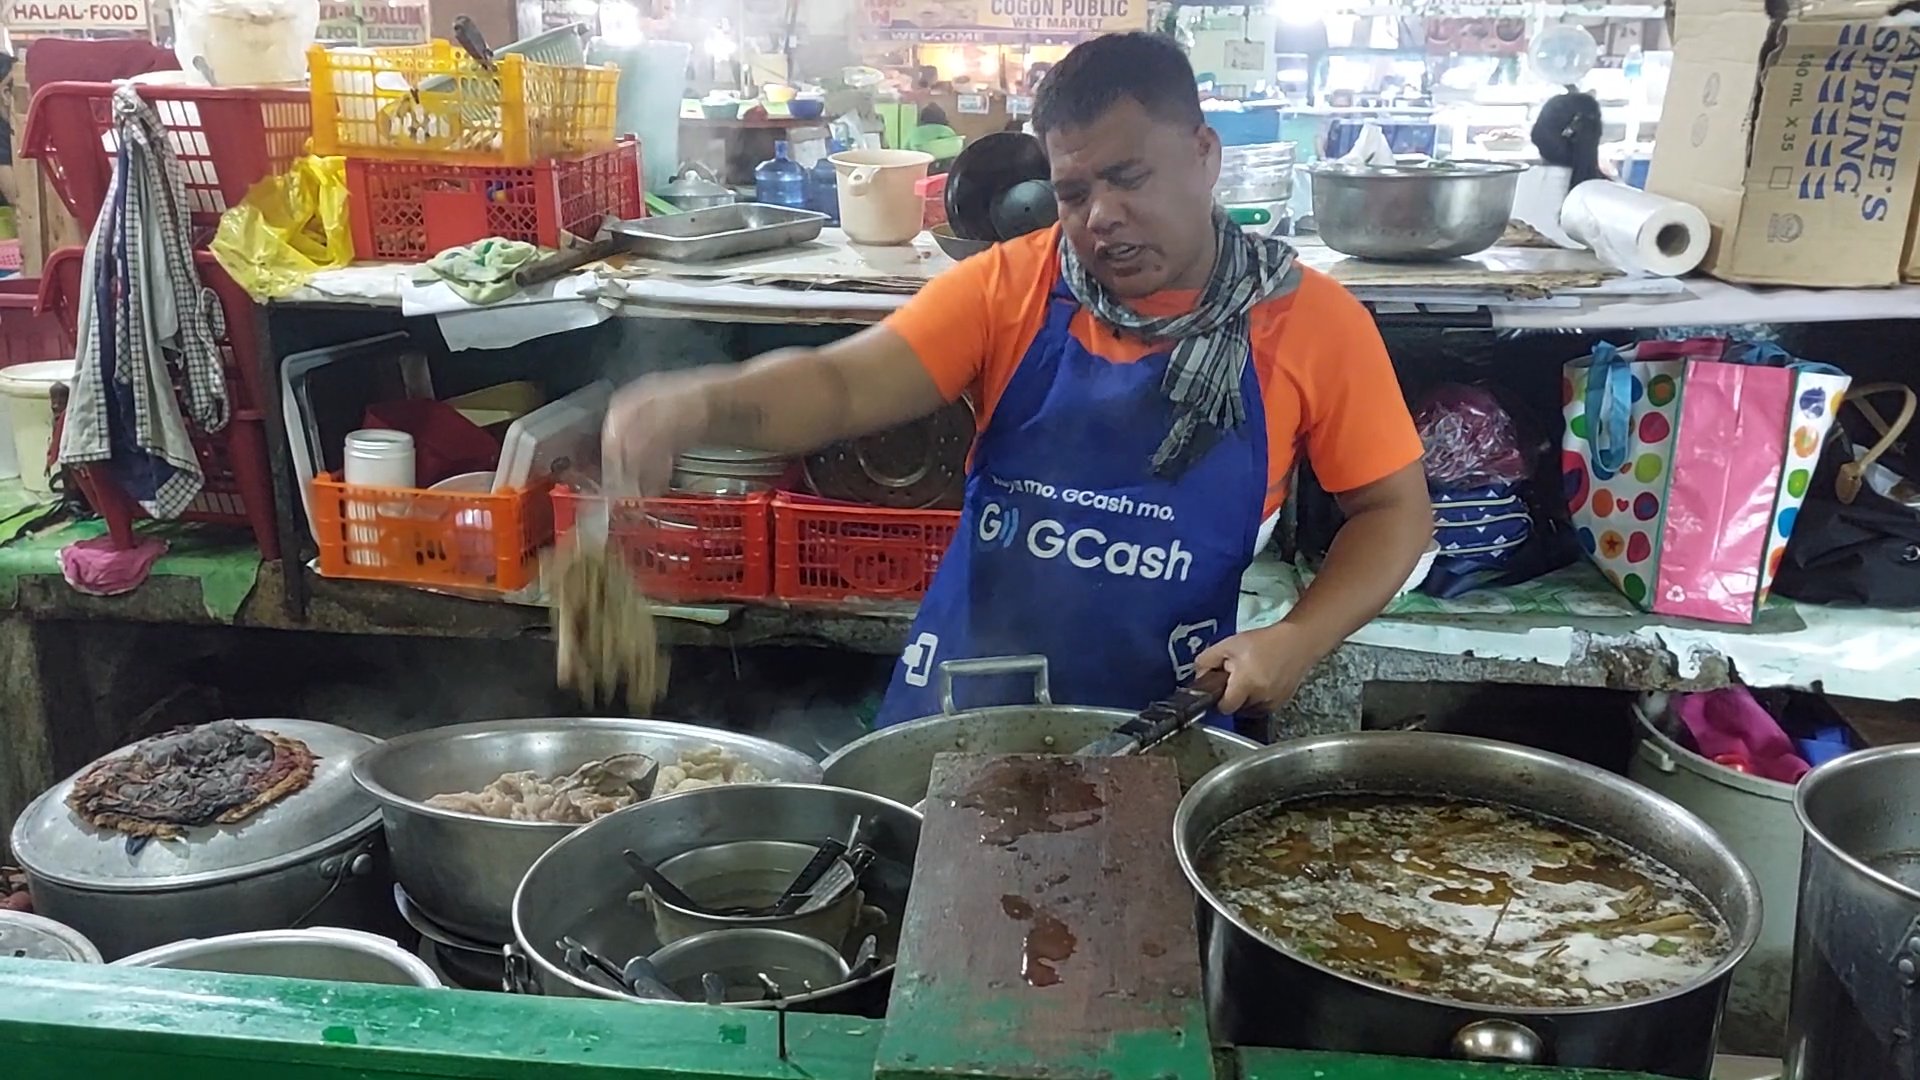 PHILIPPINEN BLOG - Halal Food in moslemischen Eateries auf dem Markt